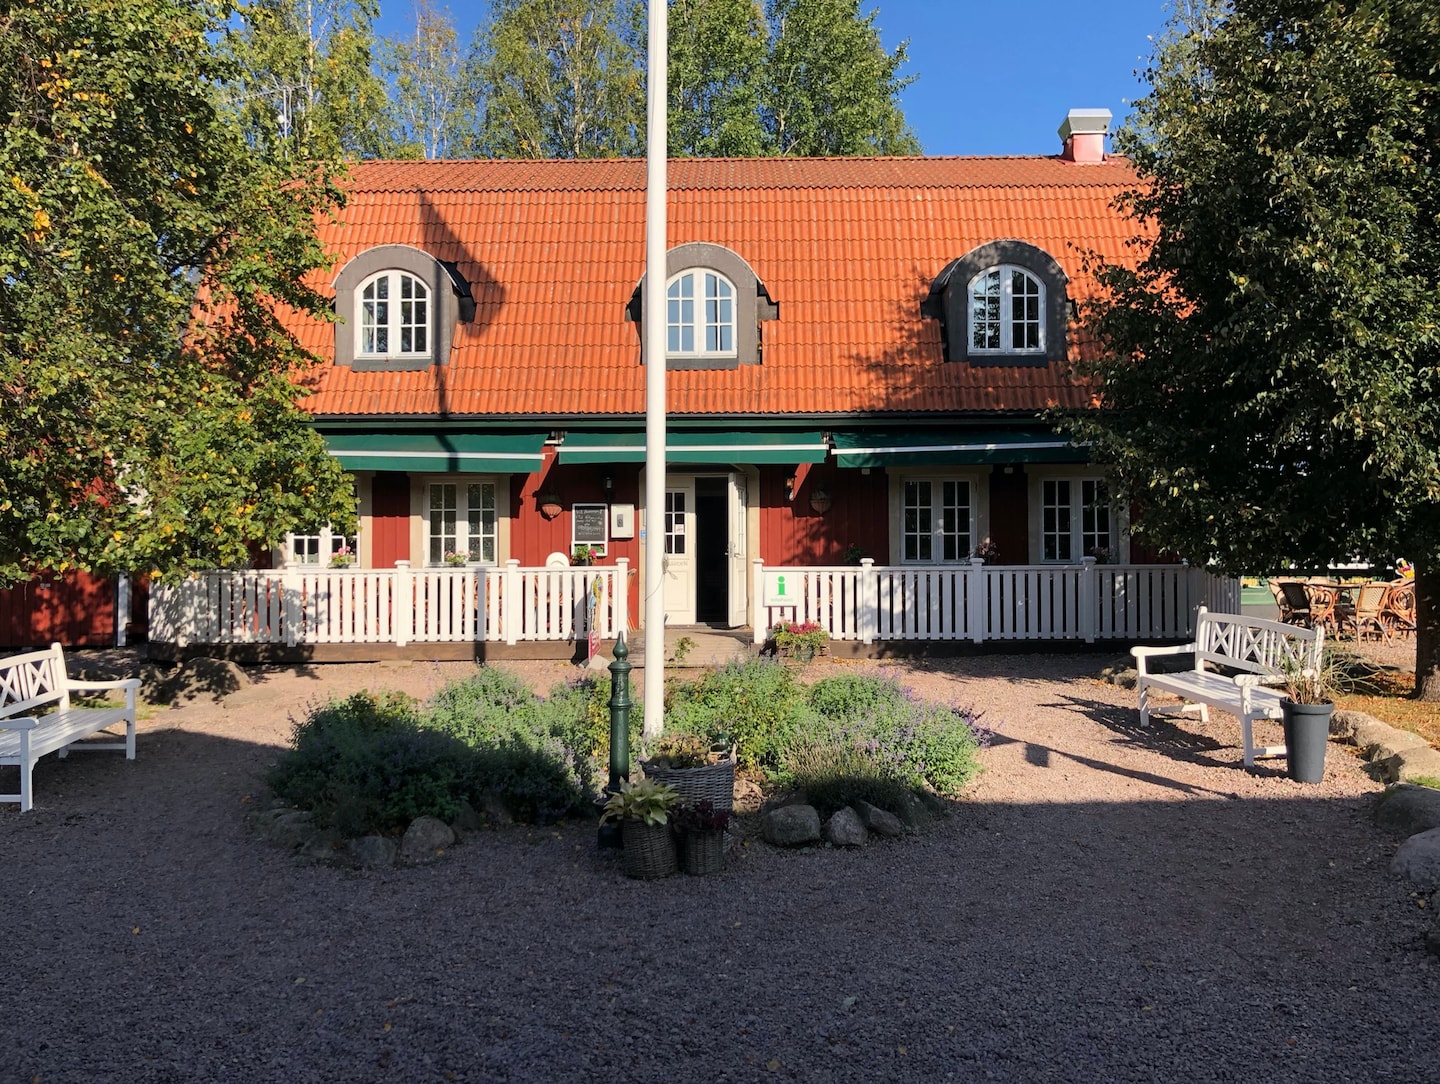 Hyra av stuga på Oxgården i Vimmerby, 1 eller 2 nätter (12 av 22)